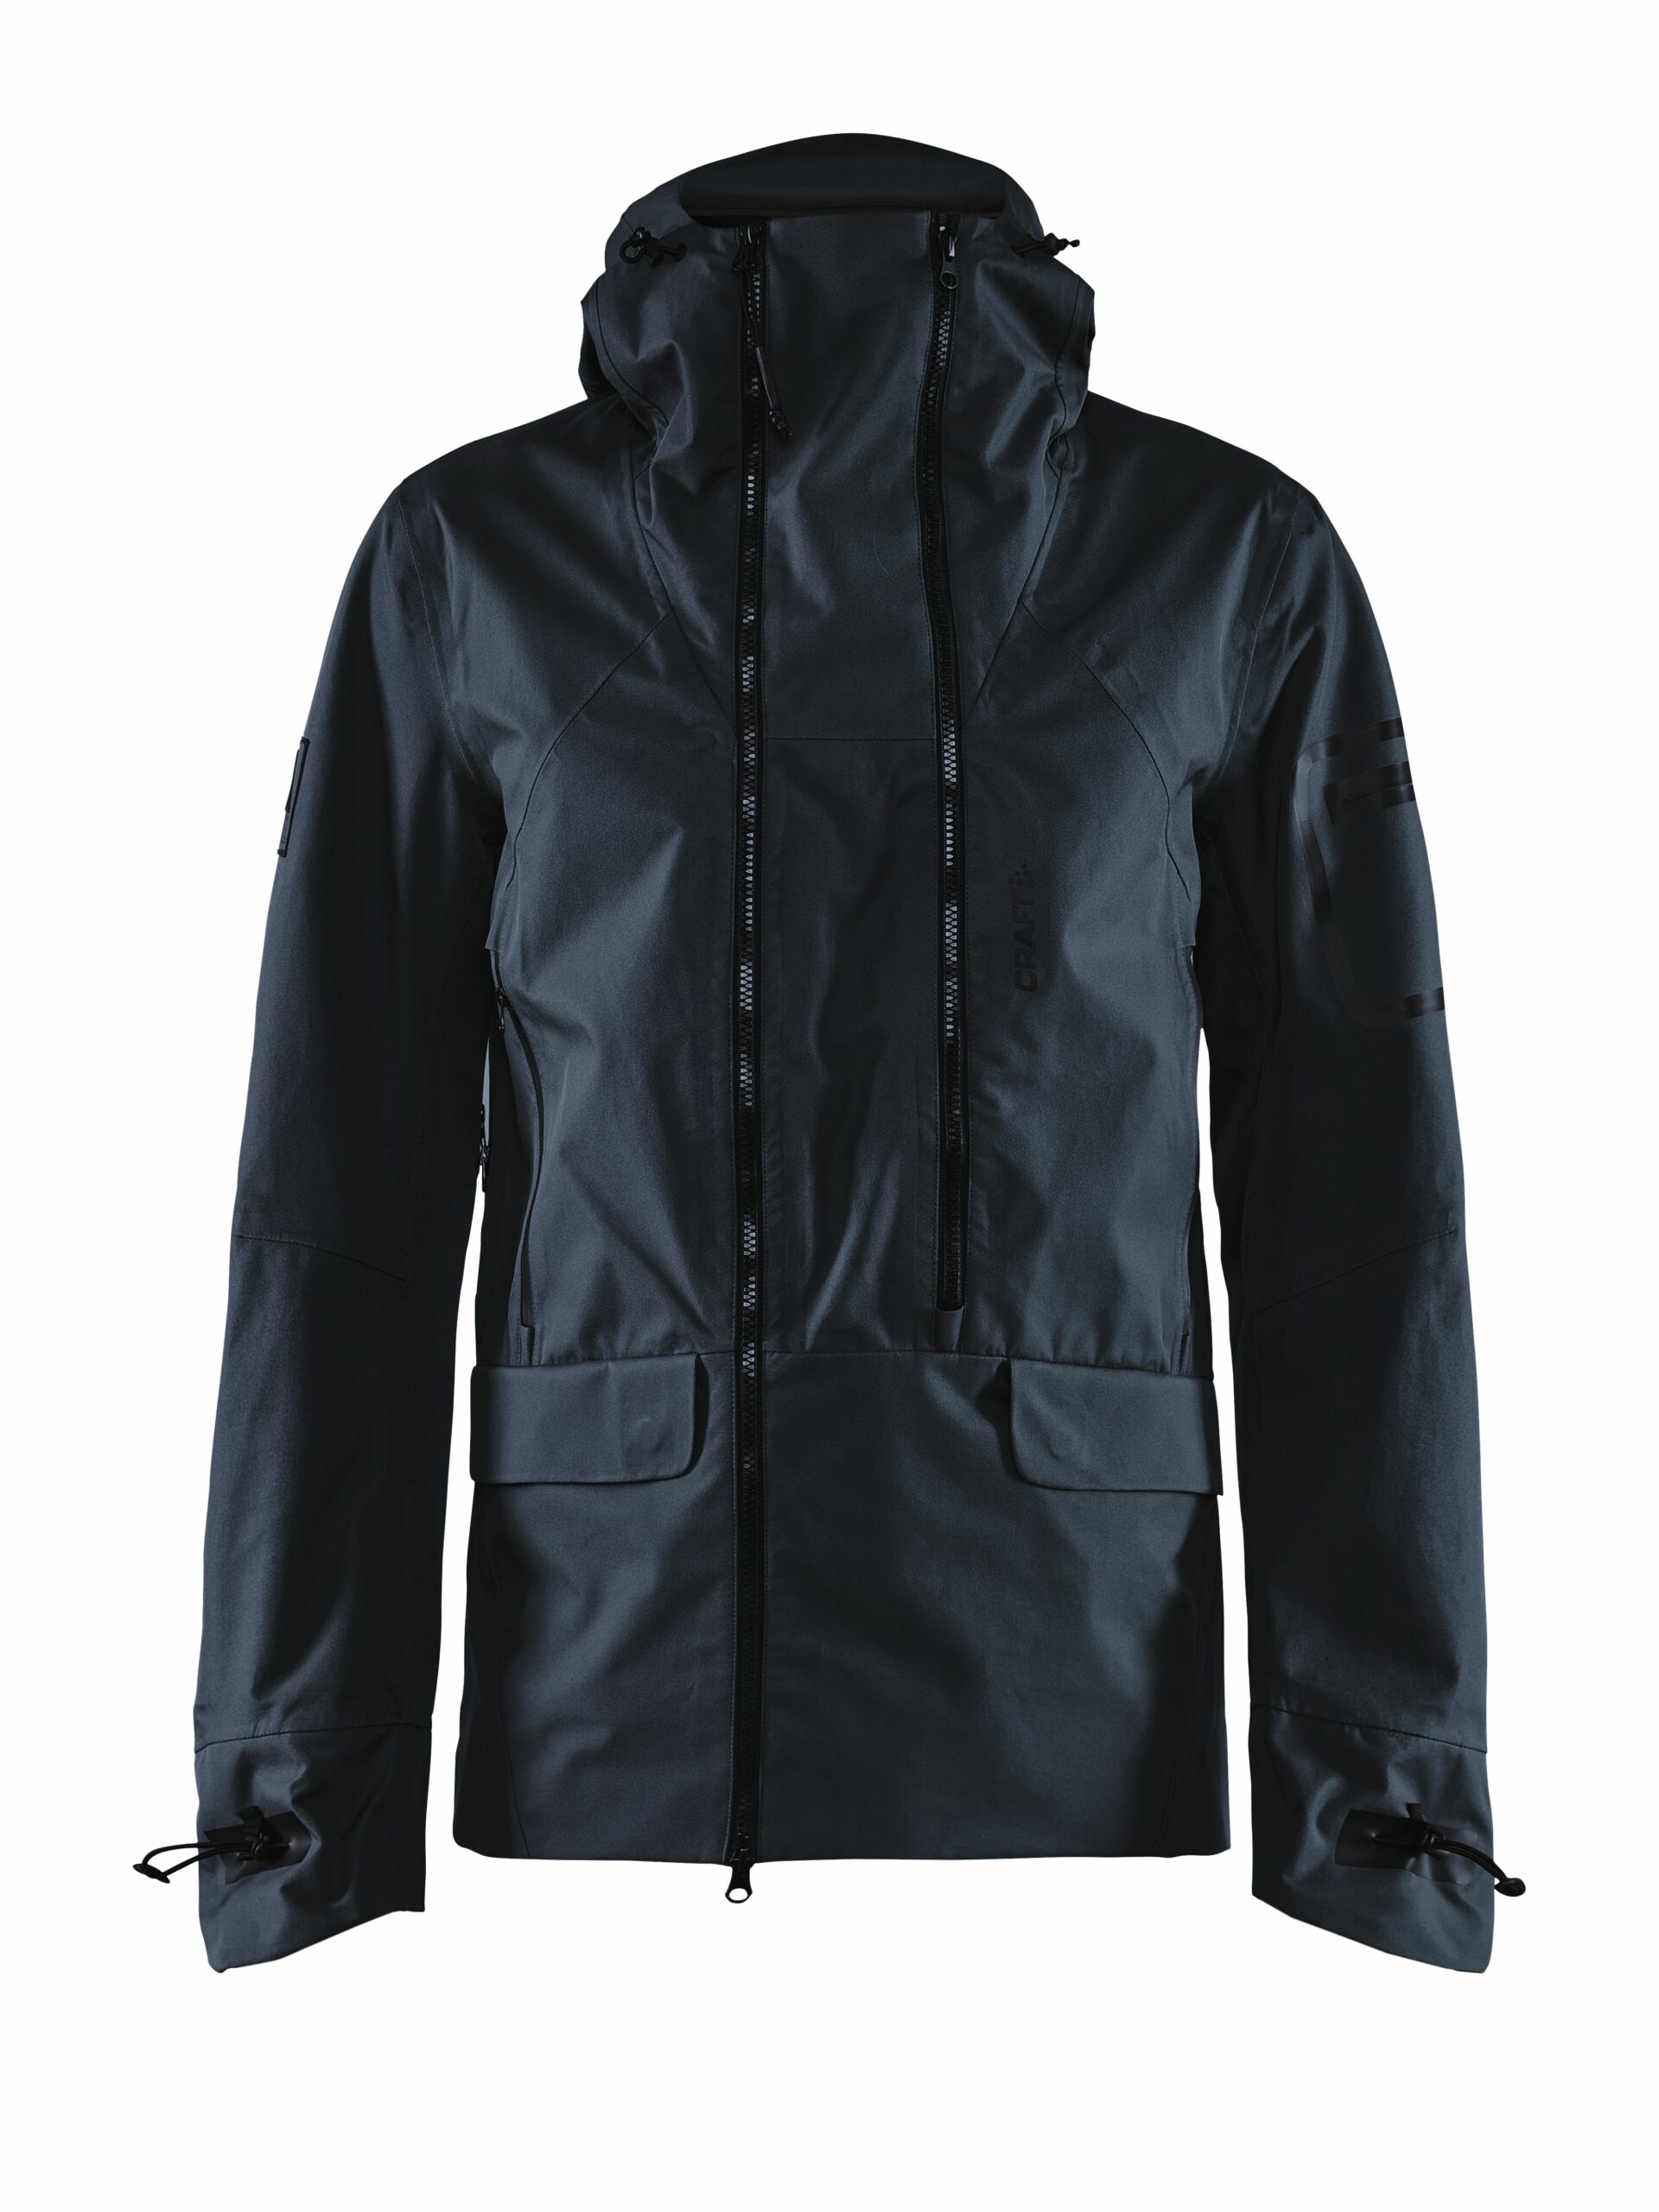 Craft - Polar shell jacket Maend - Black XL